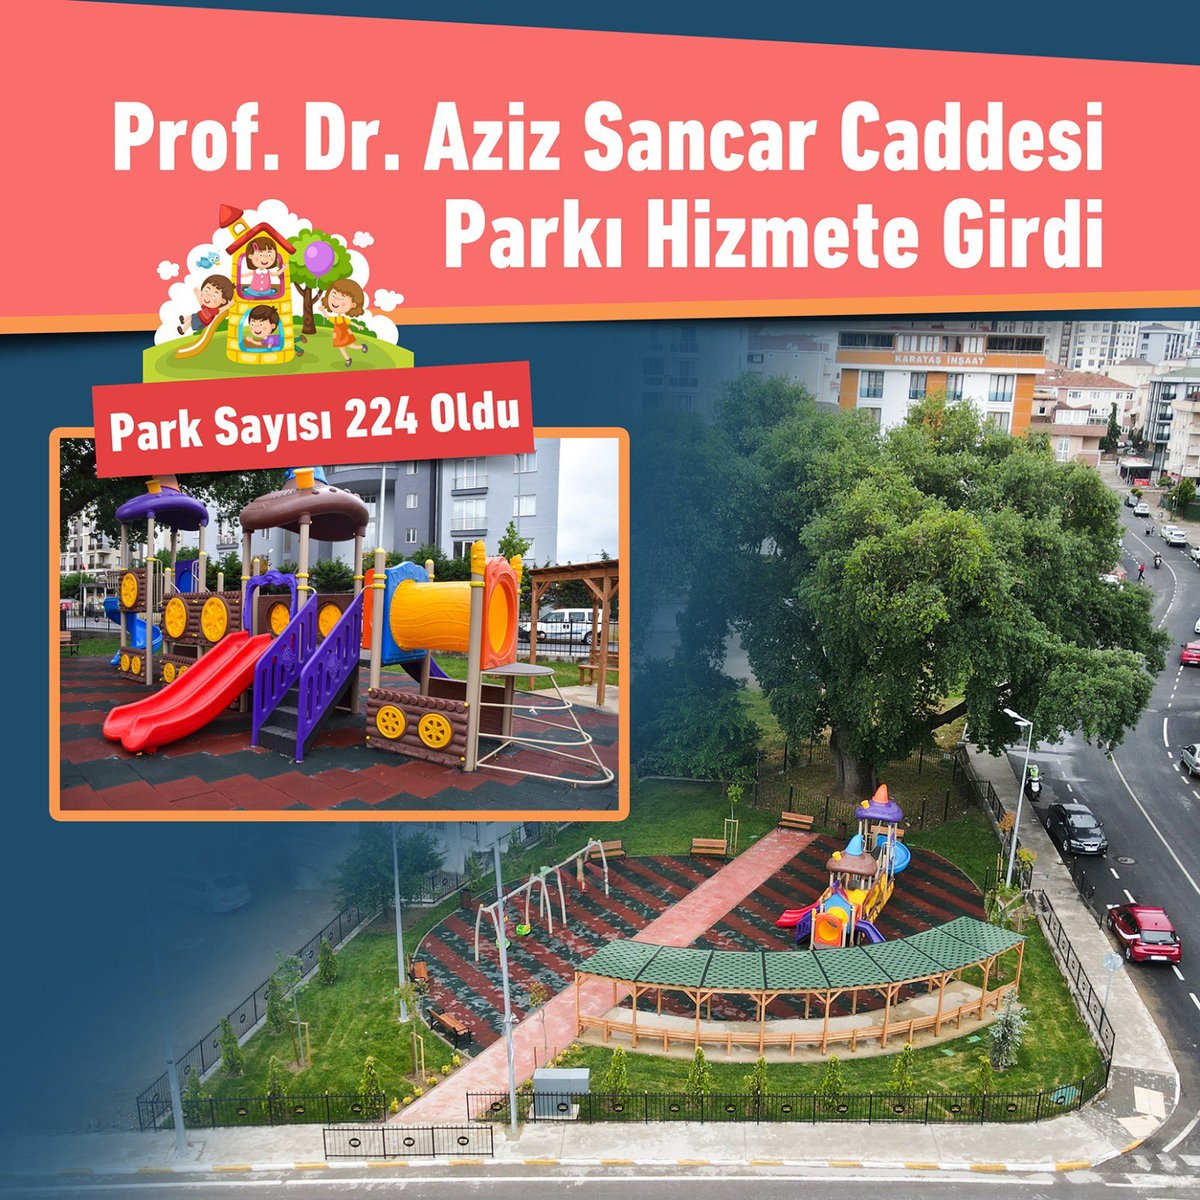 🌳🛝 Prof. Dr. Aziz Sancar Parkı'mızı da tamamlayarak Pendik'imizdeki park sayısını 224'e çıkardık. 770 metrekarelik yeni parkımızda, eğlenceli oyun grupları, rahat oturma alanları ve asırlık anıt ağaç sizleri bekliyor. Komşularımıza hayırlı olsun. 📍Kurtköy Mahallesi